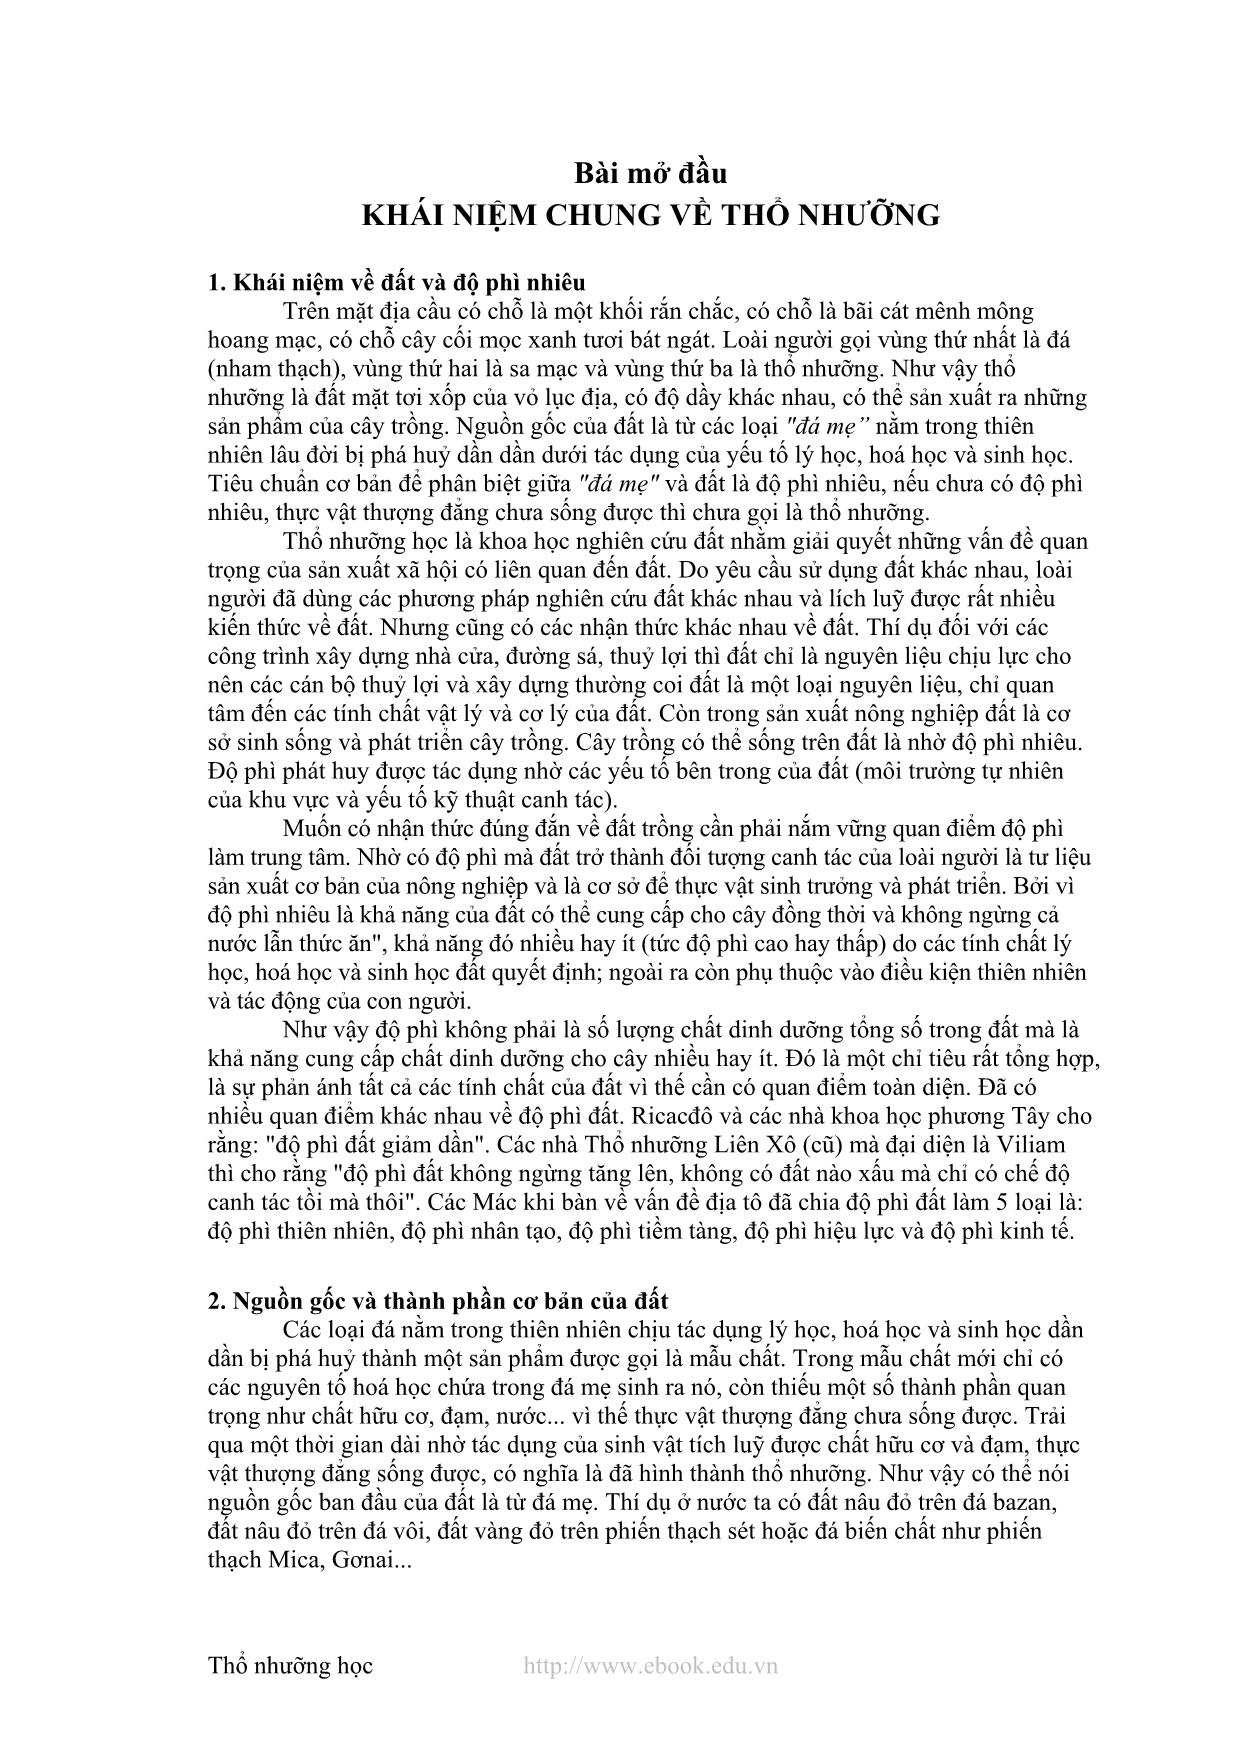 Giáo trình Thổ nhưỡng học (Phần 1) trang 2